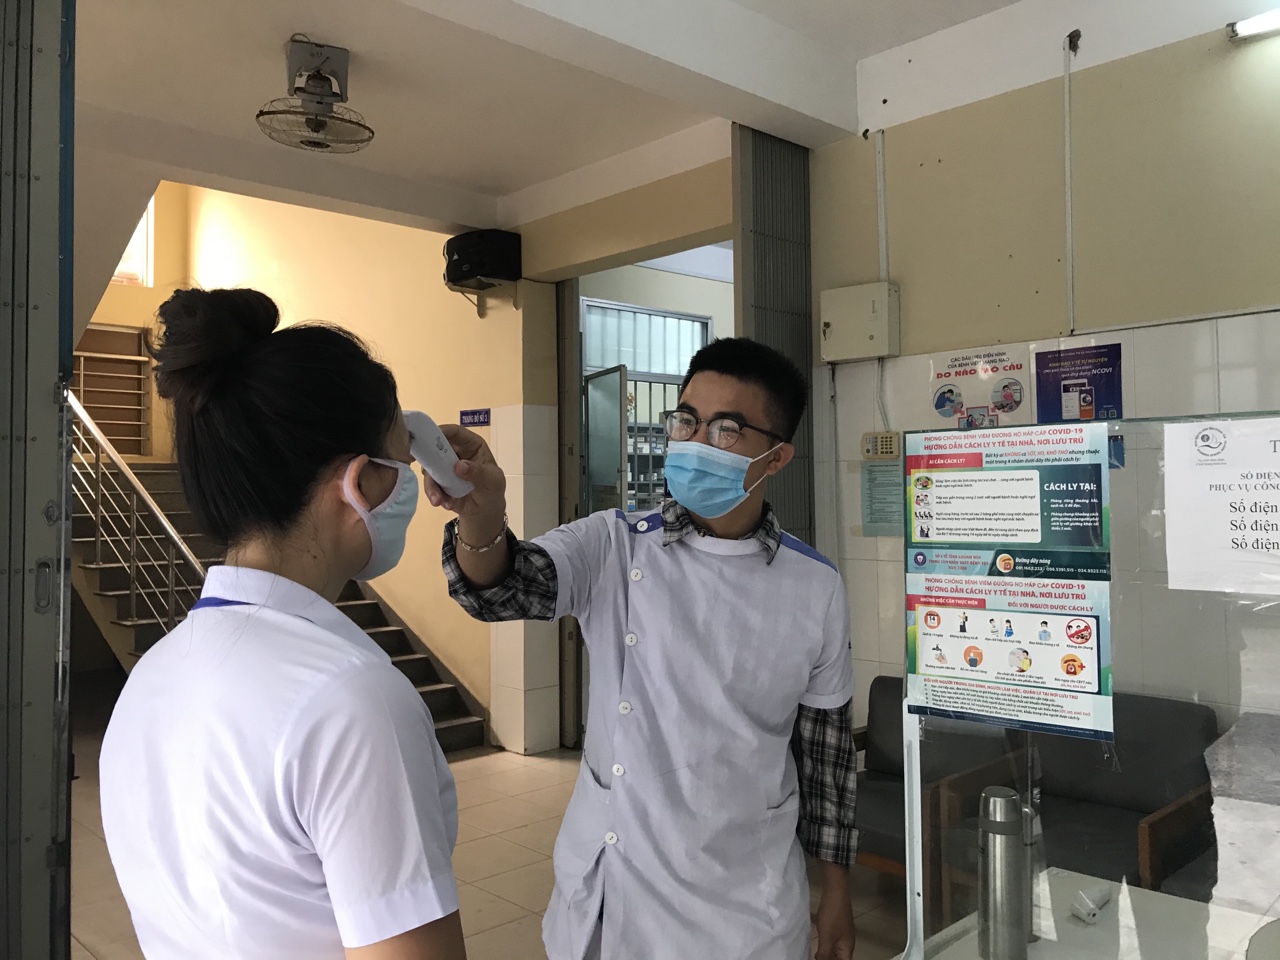 Kiểm tra thân nhiệt người đến khám bệnh tại Bệnh viện Đa khoa tỉnh Khánh Hòa